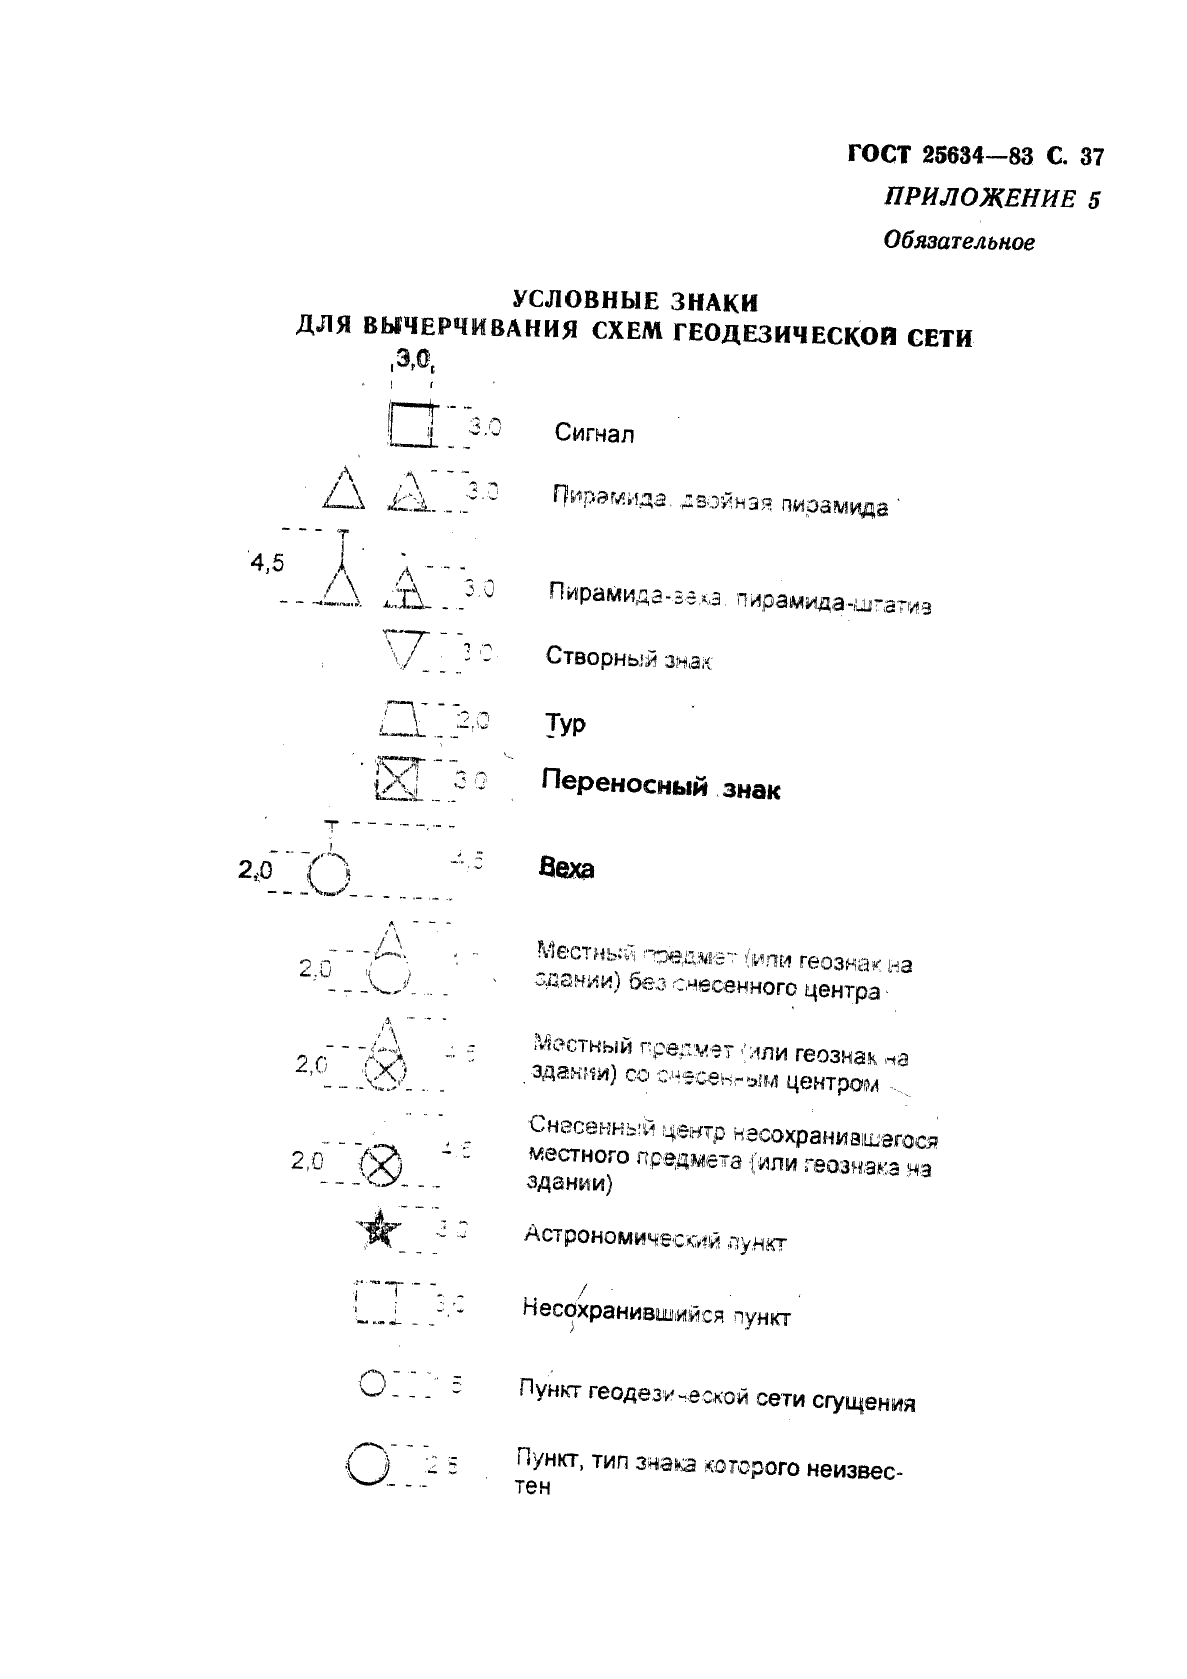 ГОСТ 25634-83 Каталог координат геодезических пунктов. Форма и содержание (фото 38 из 42)